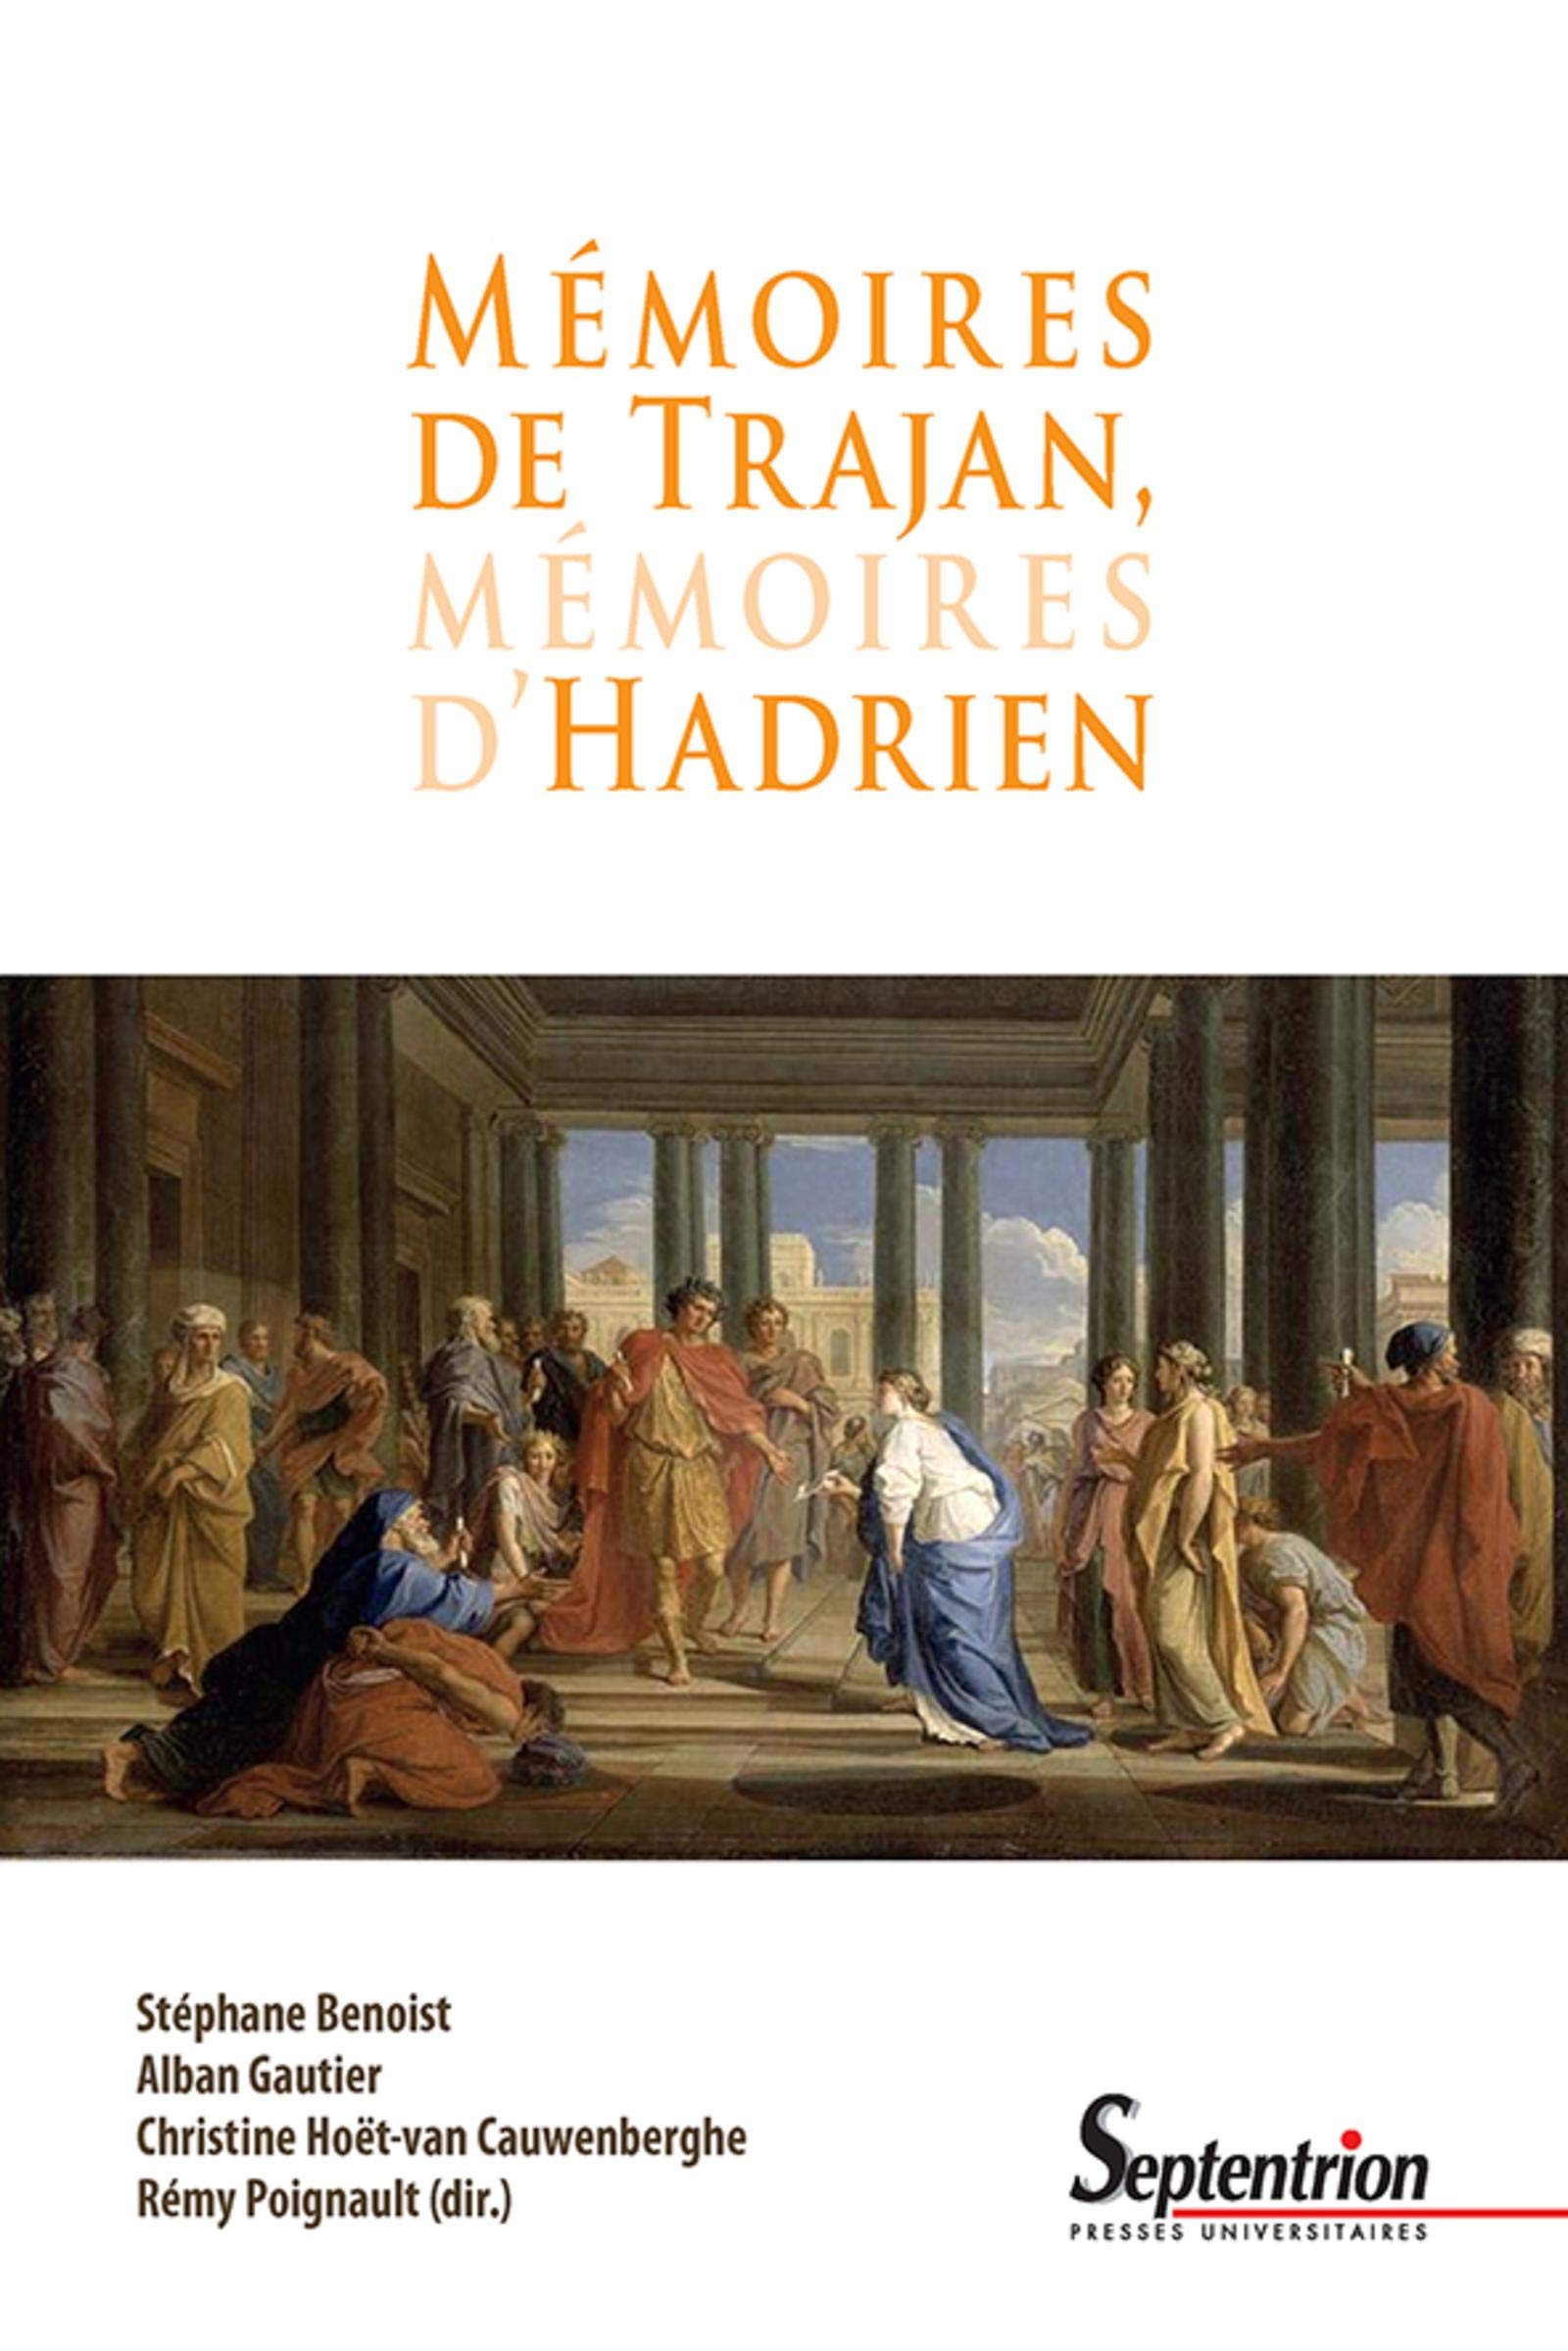 Mémoires de Trajan, mémoires d'Hadrien, 2020, 528 p.